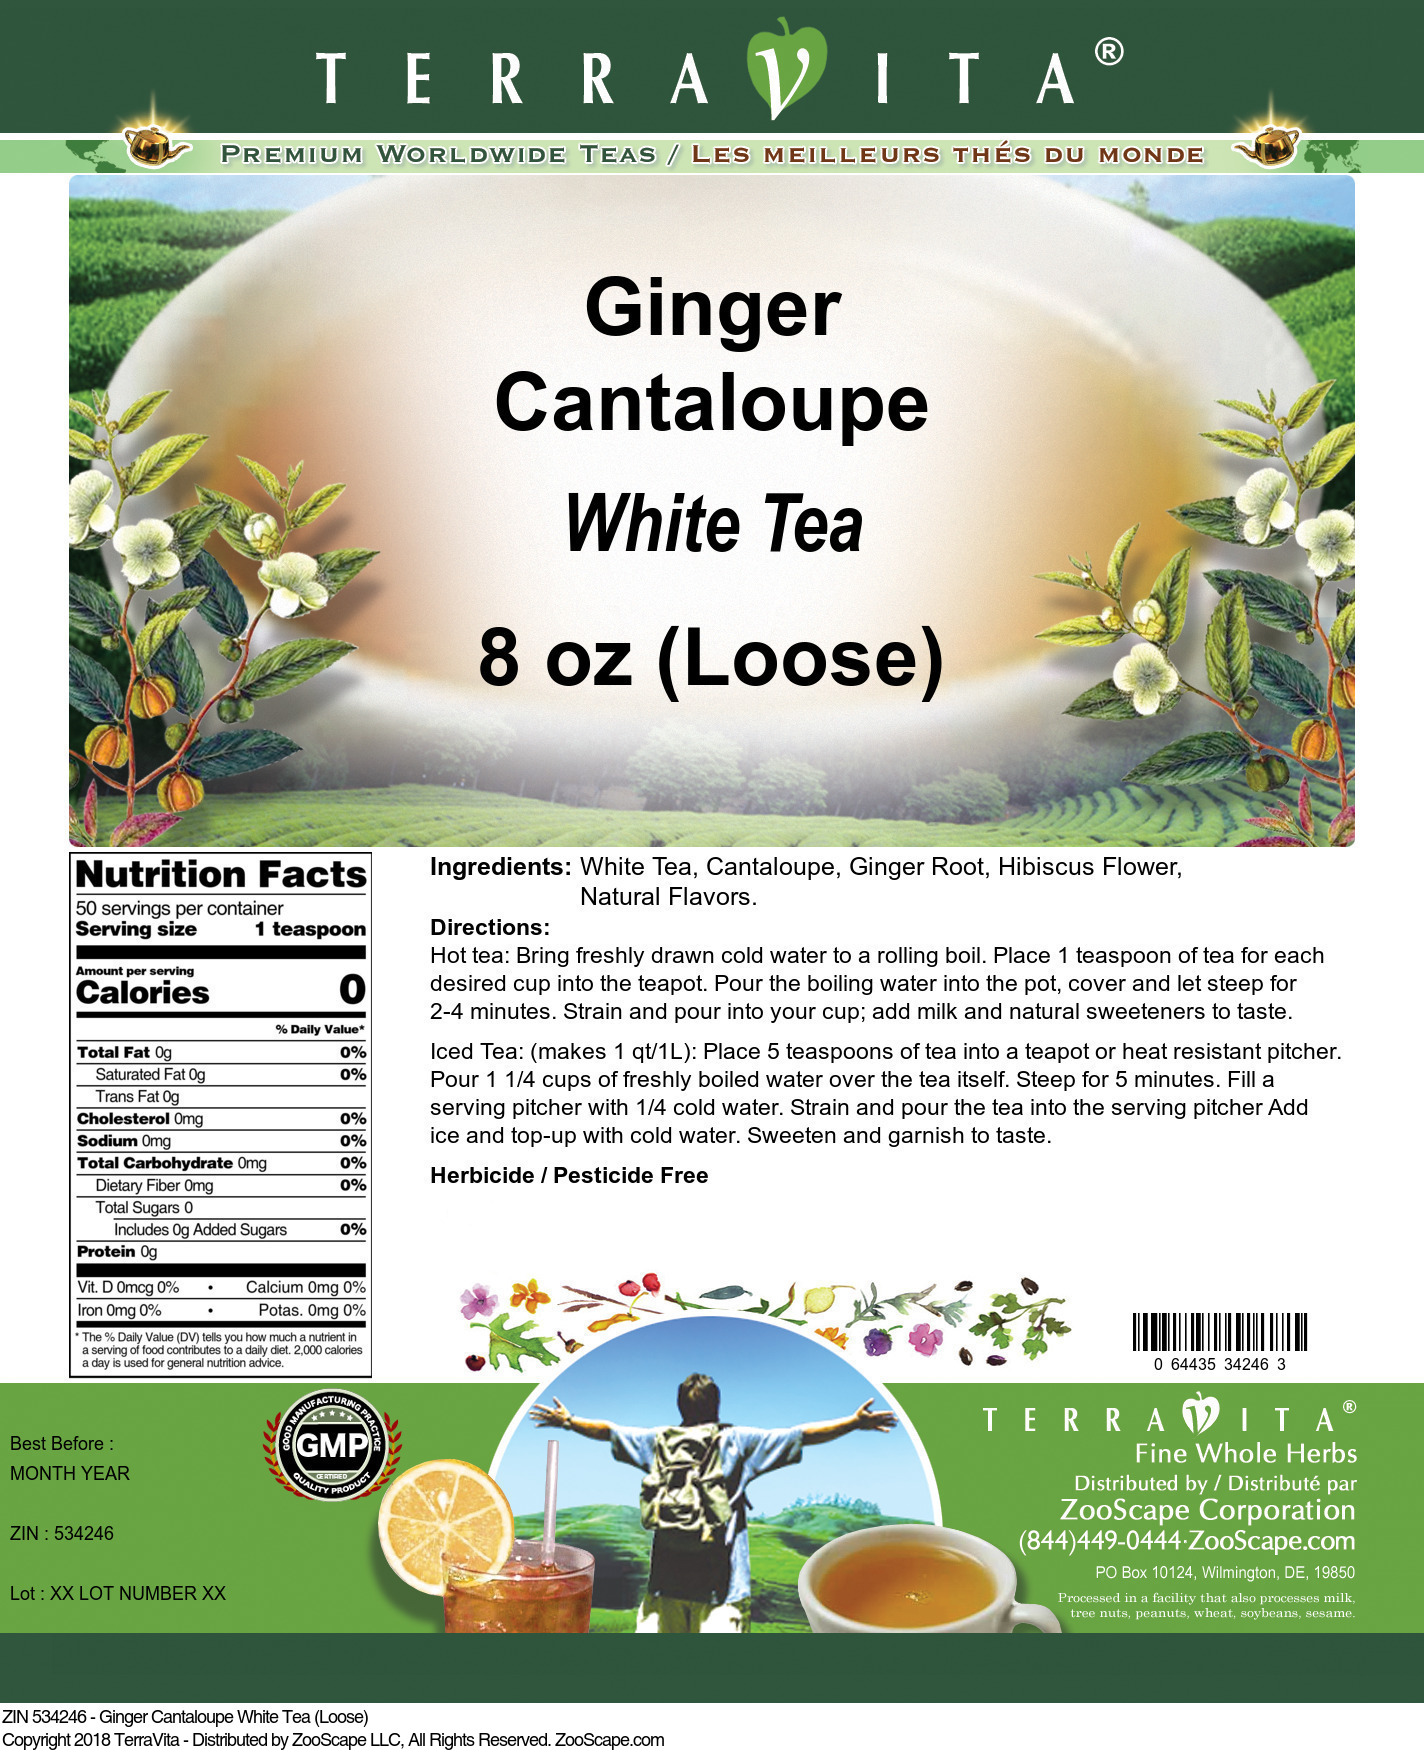 Ginger Cantaloupe White Tea (Loose) - Label